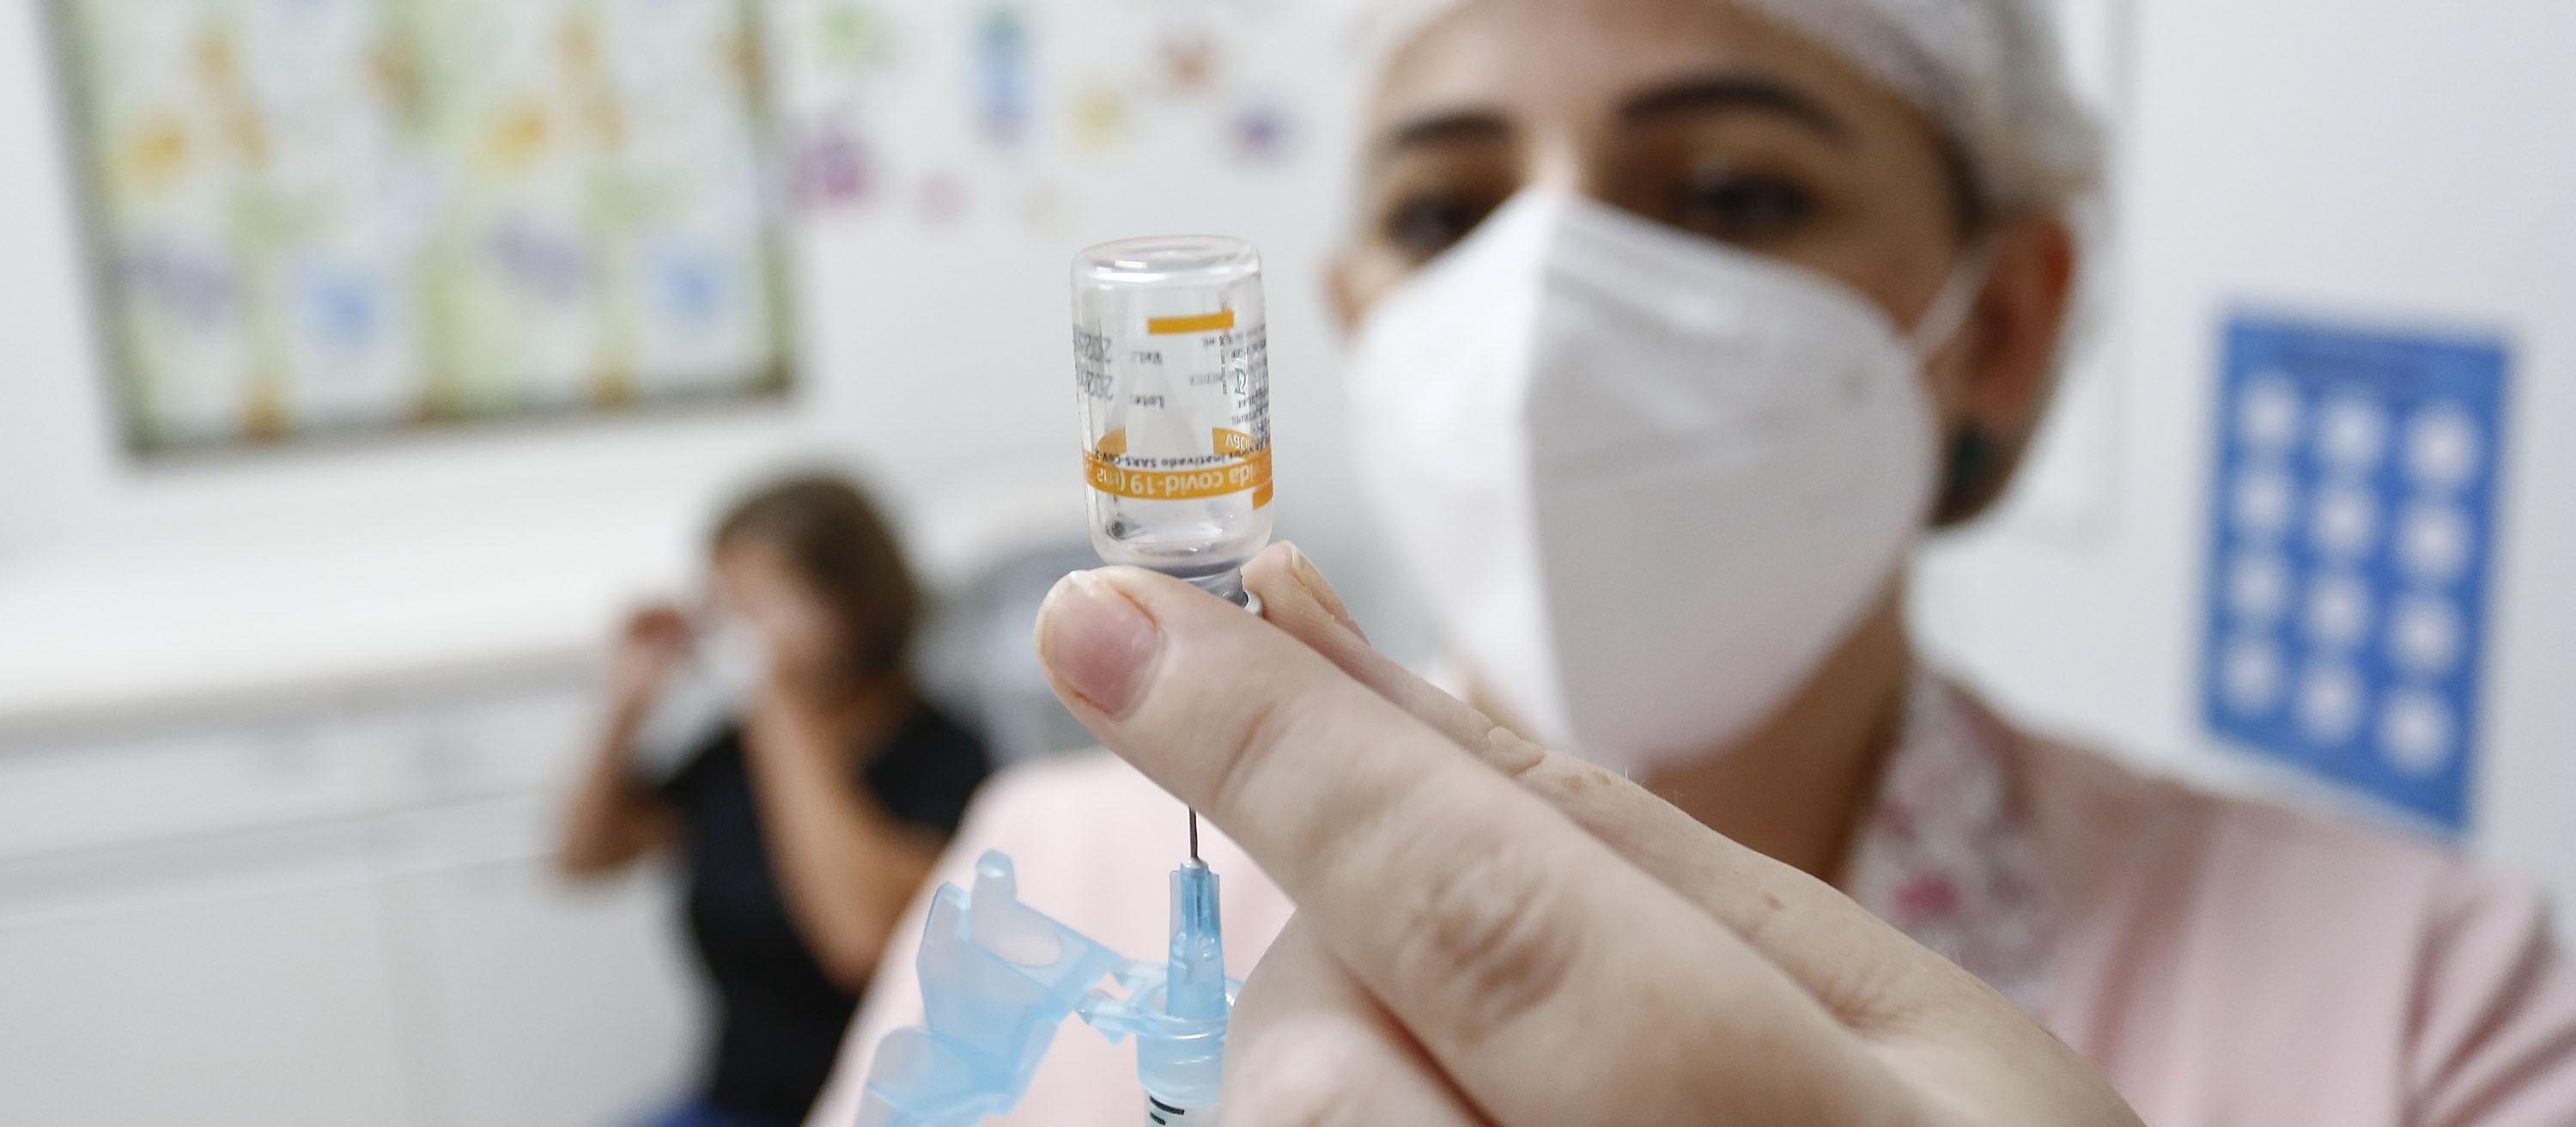 Vacinas contra a Covid-19 são furtadas de unidade de saúde de Terra Roxa, diz prefeitura